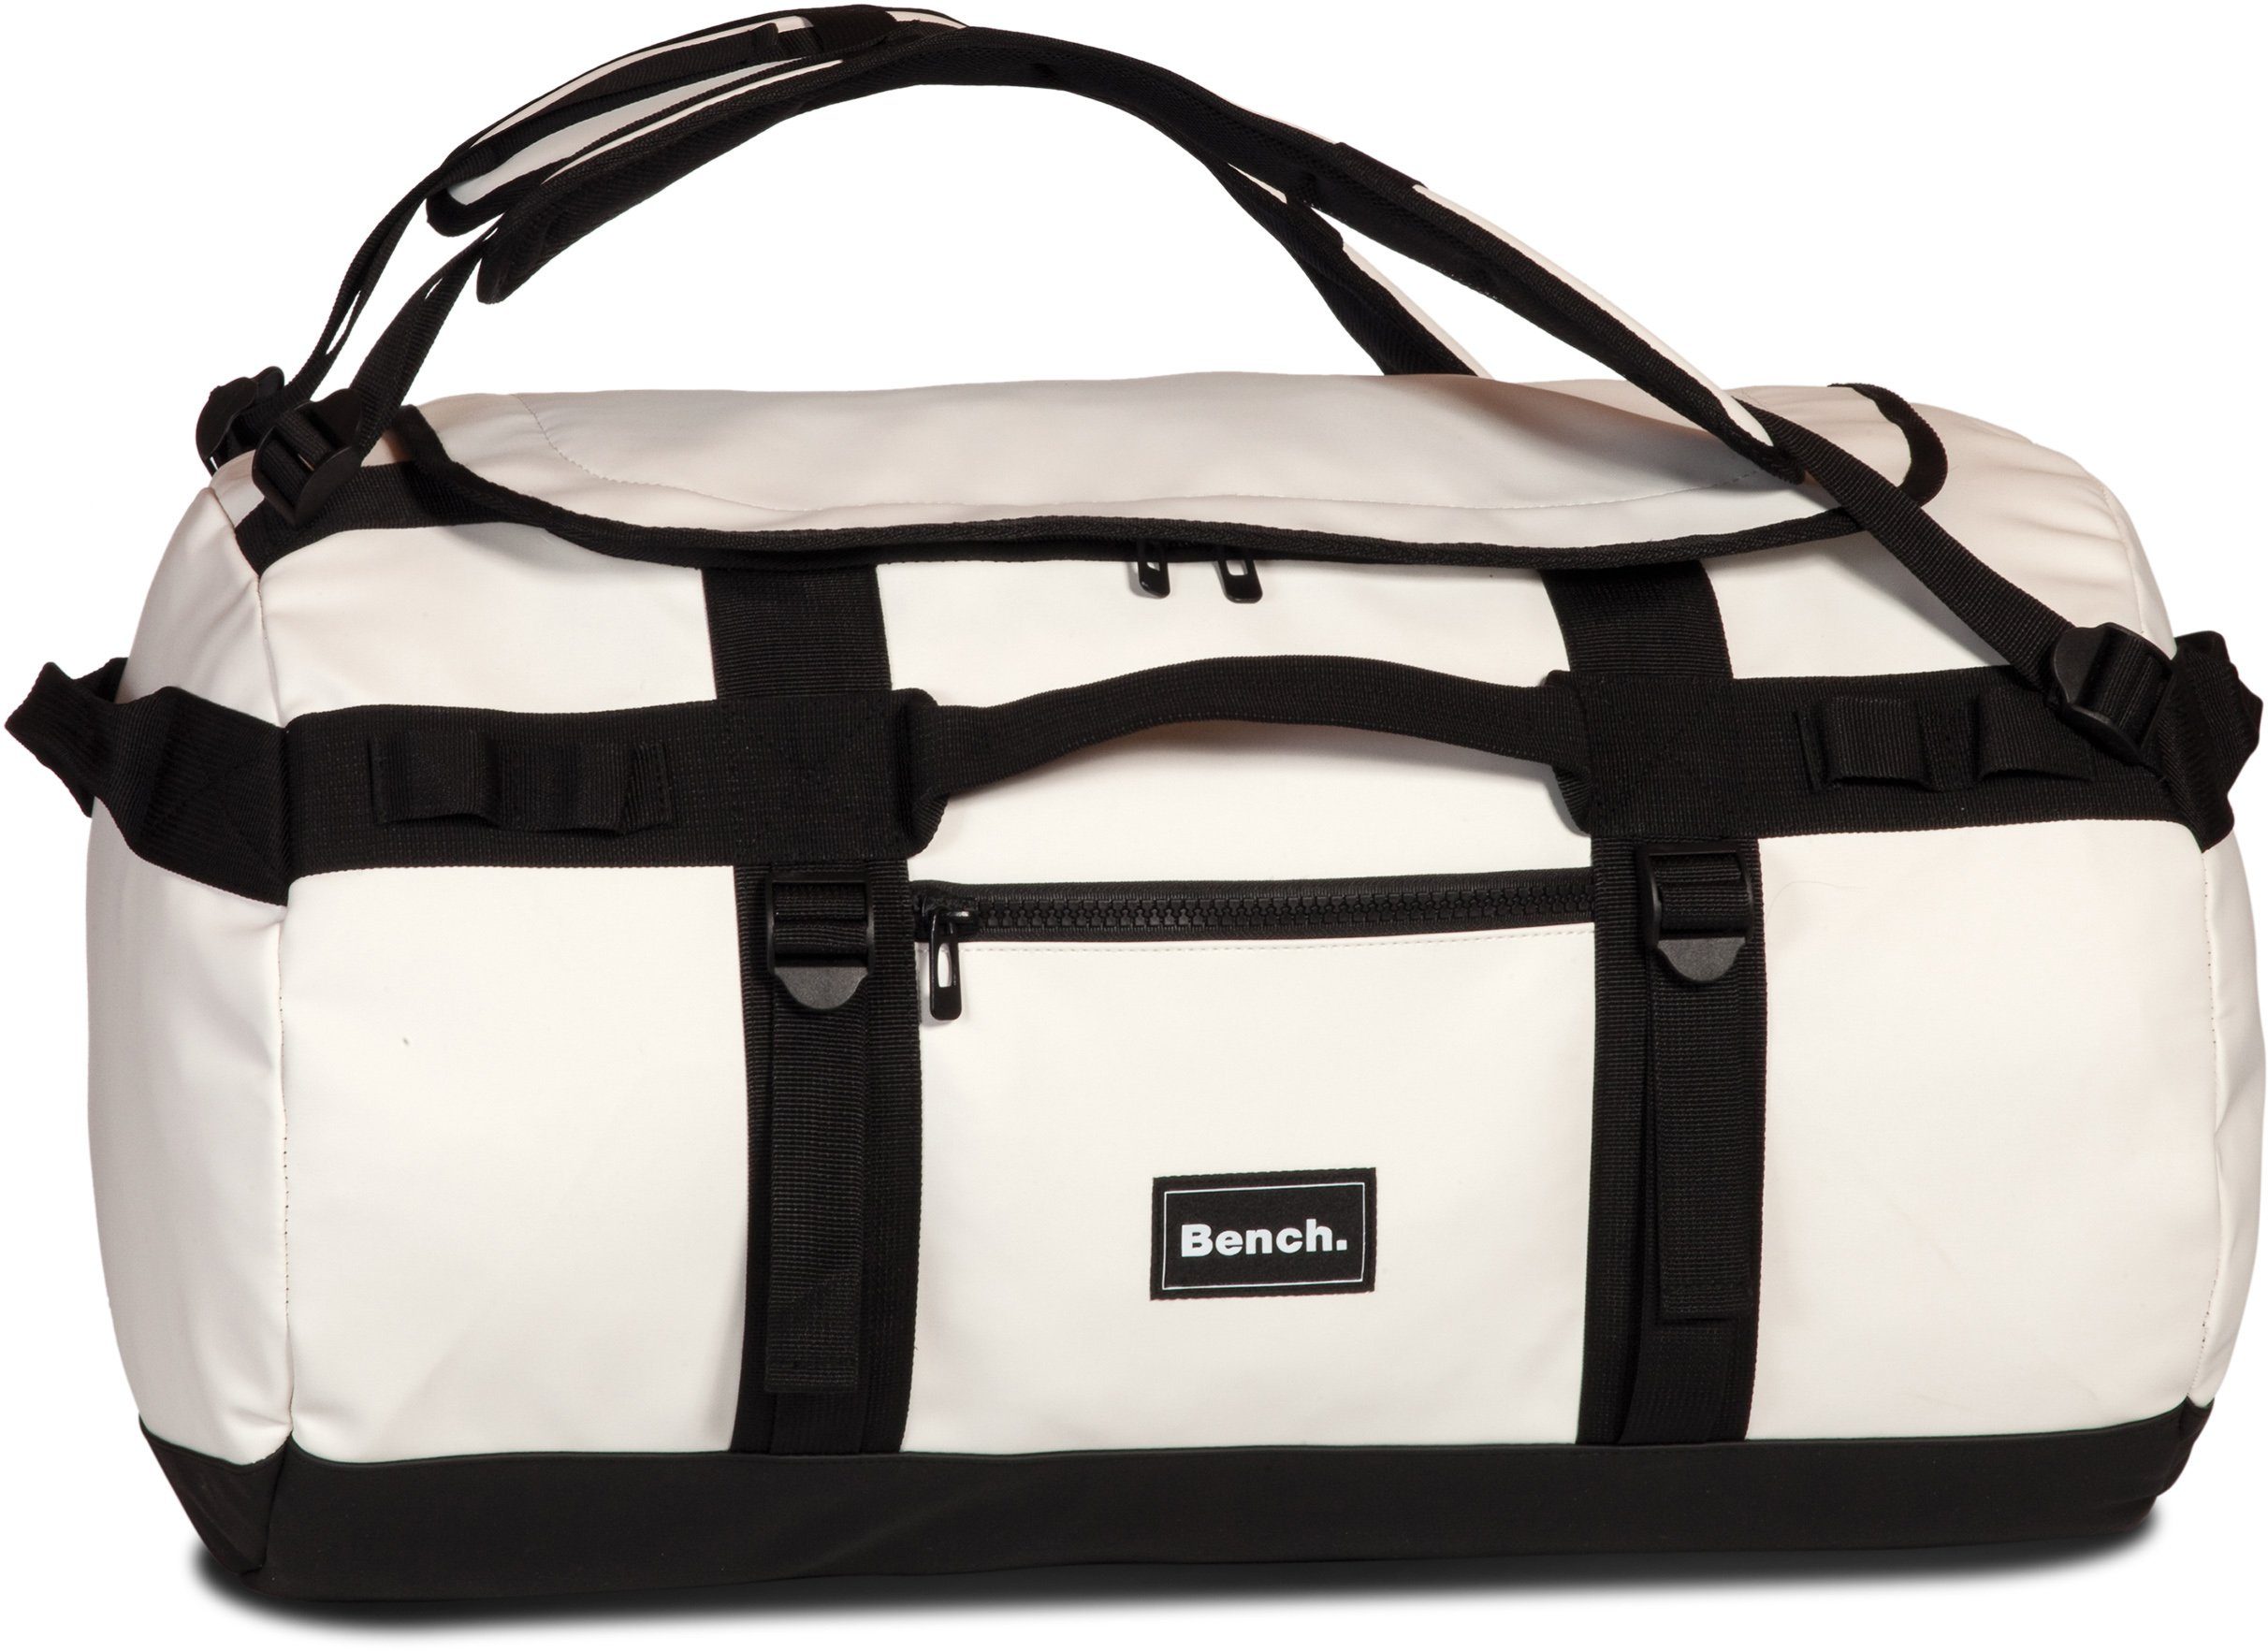 Bench. Reisetasche Hydro, weiß, mit Rucksackfunktion; aus wasserabweisendem Material weiss | Reisetaschen